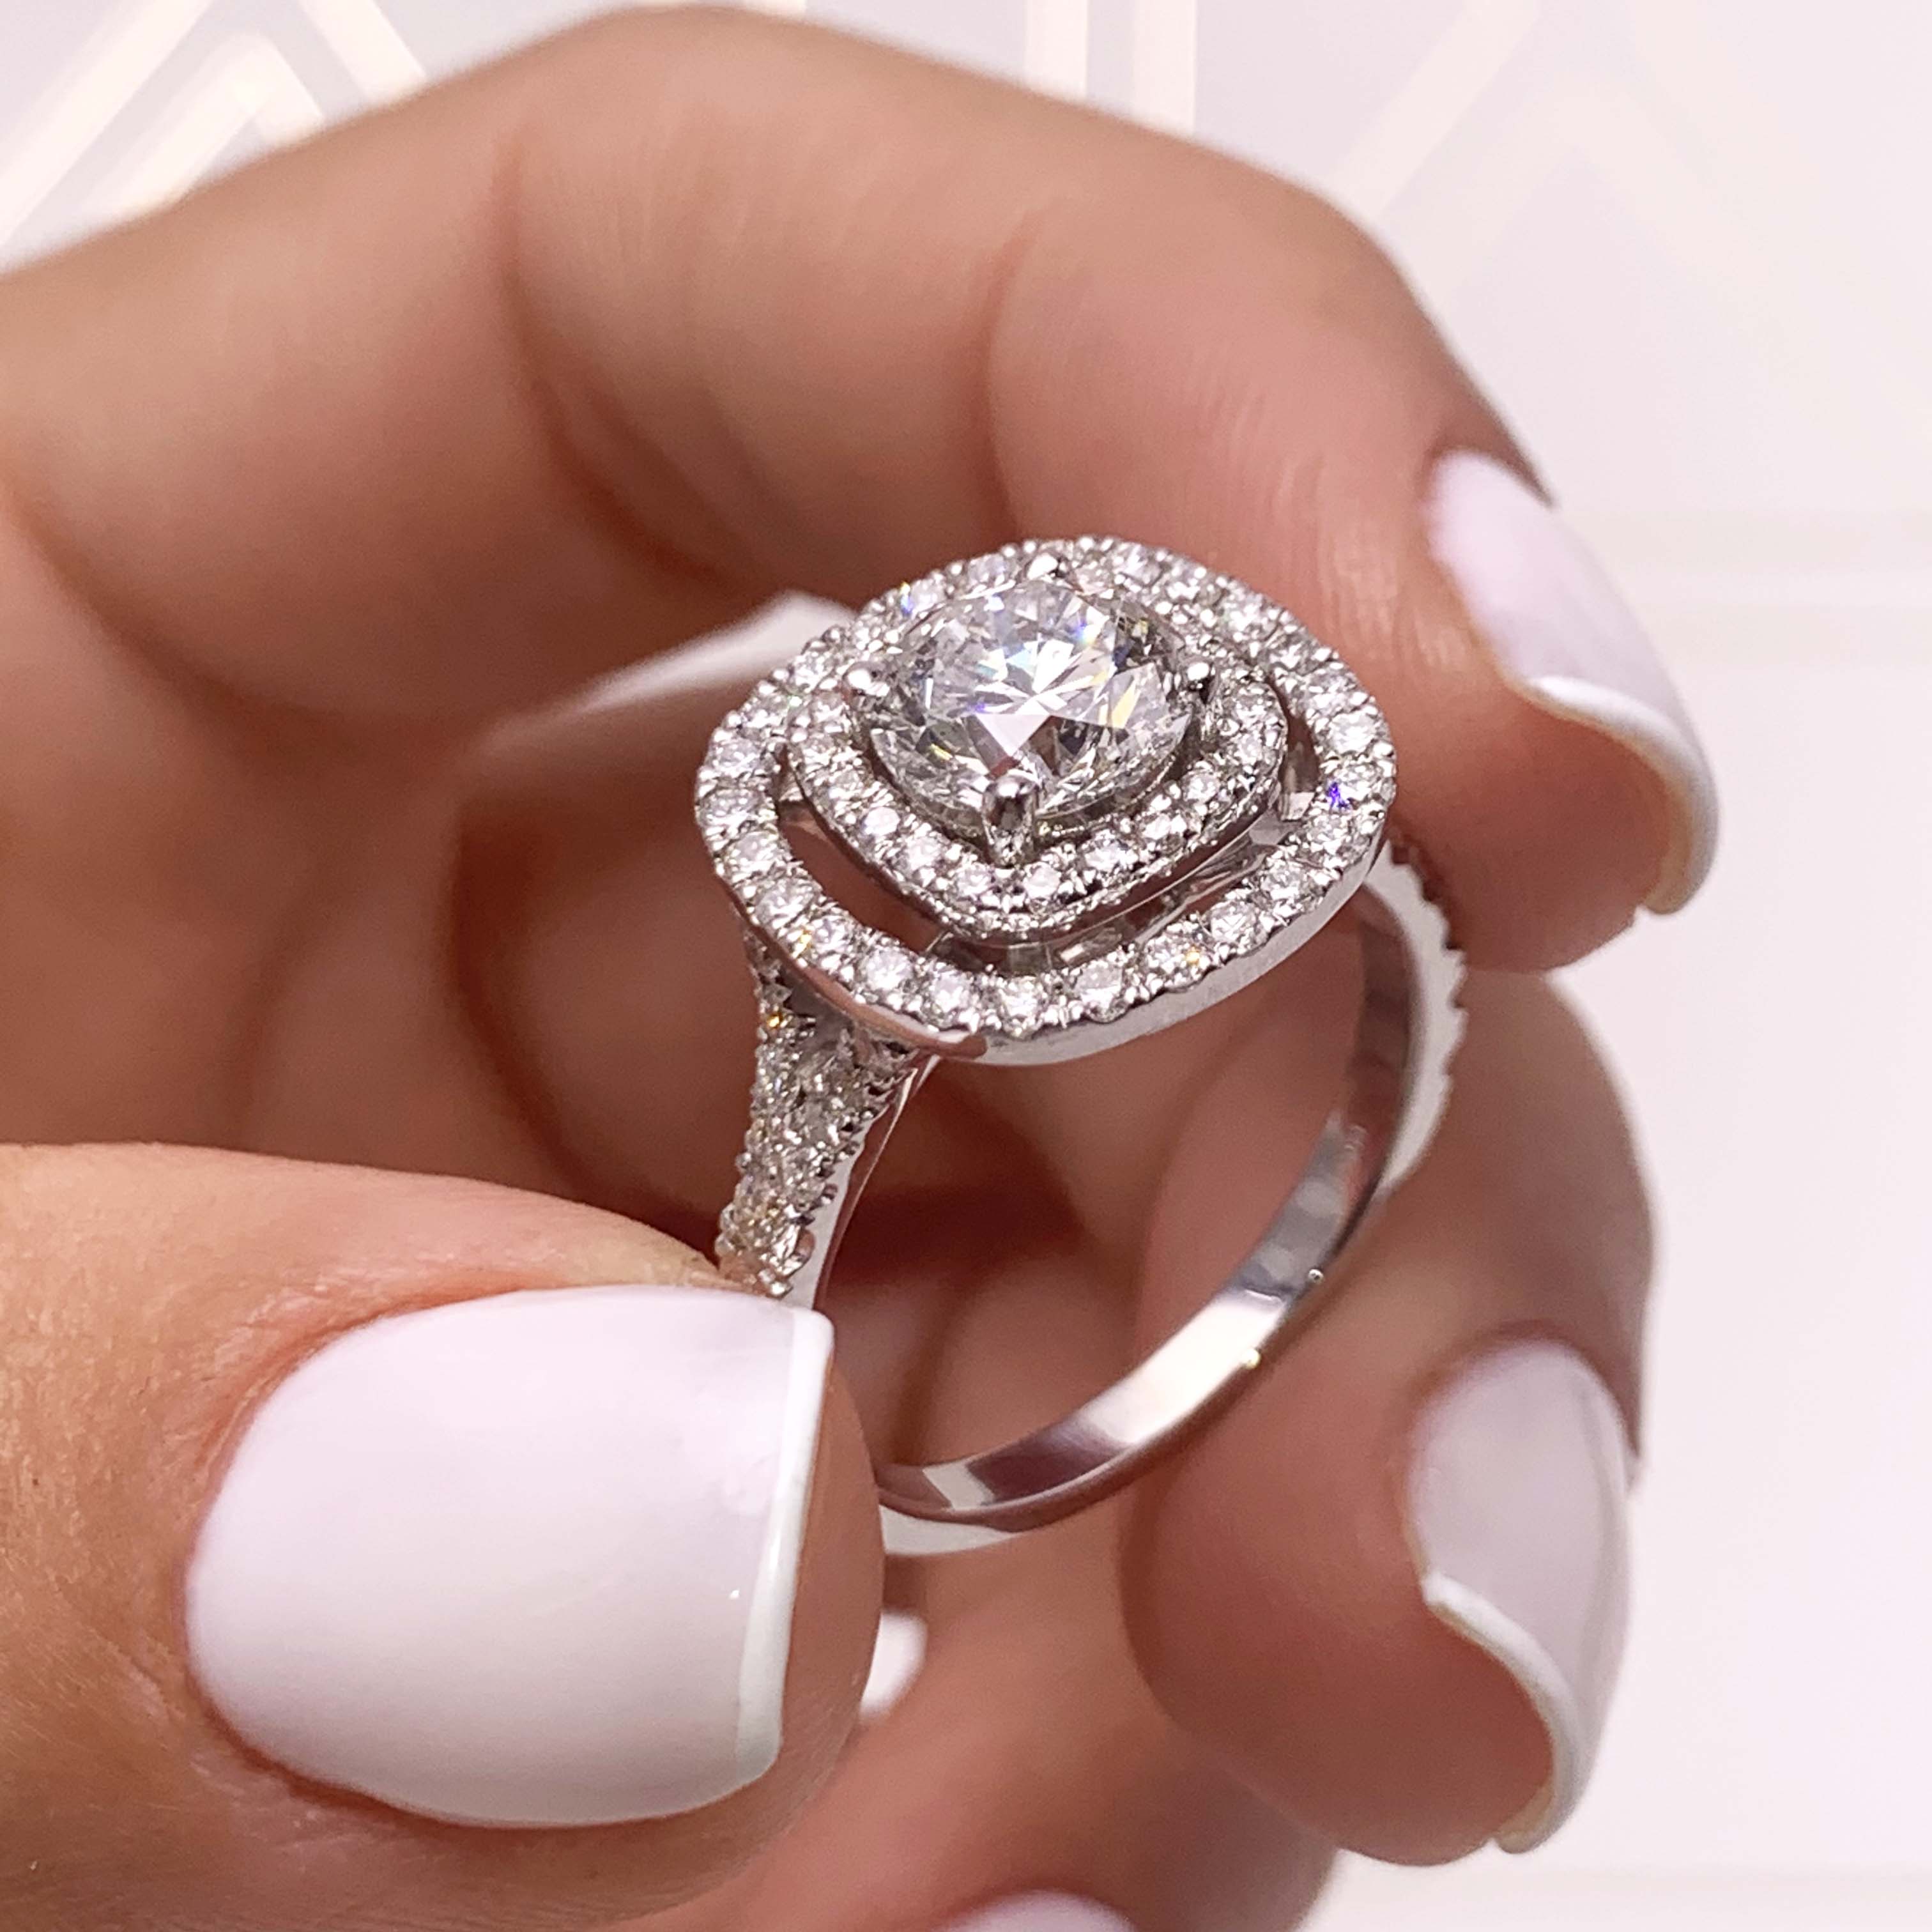 Natalie Diamond Engagement Ring -14K White Gold